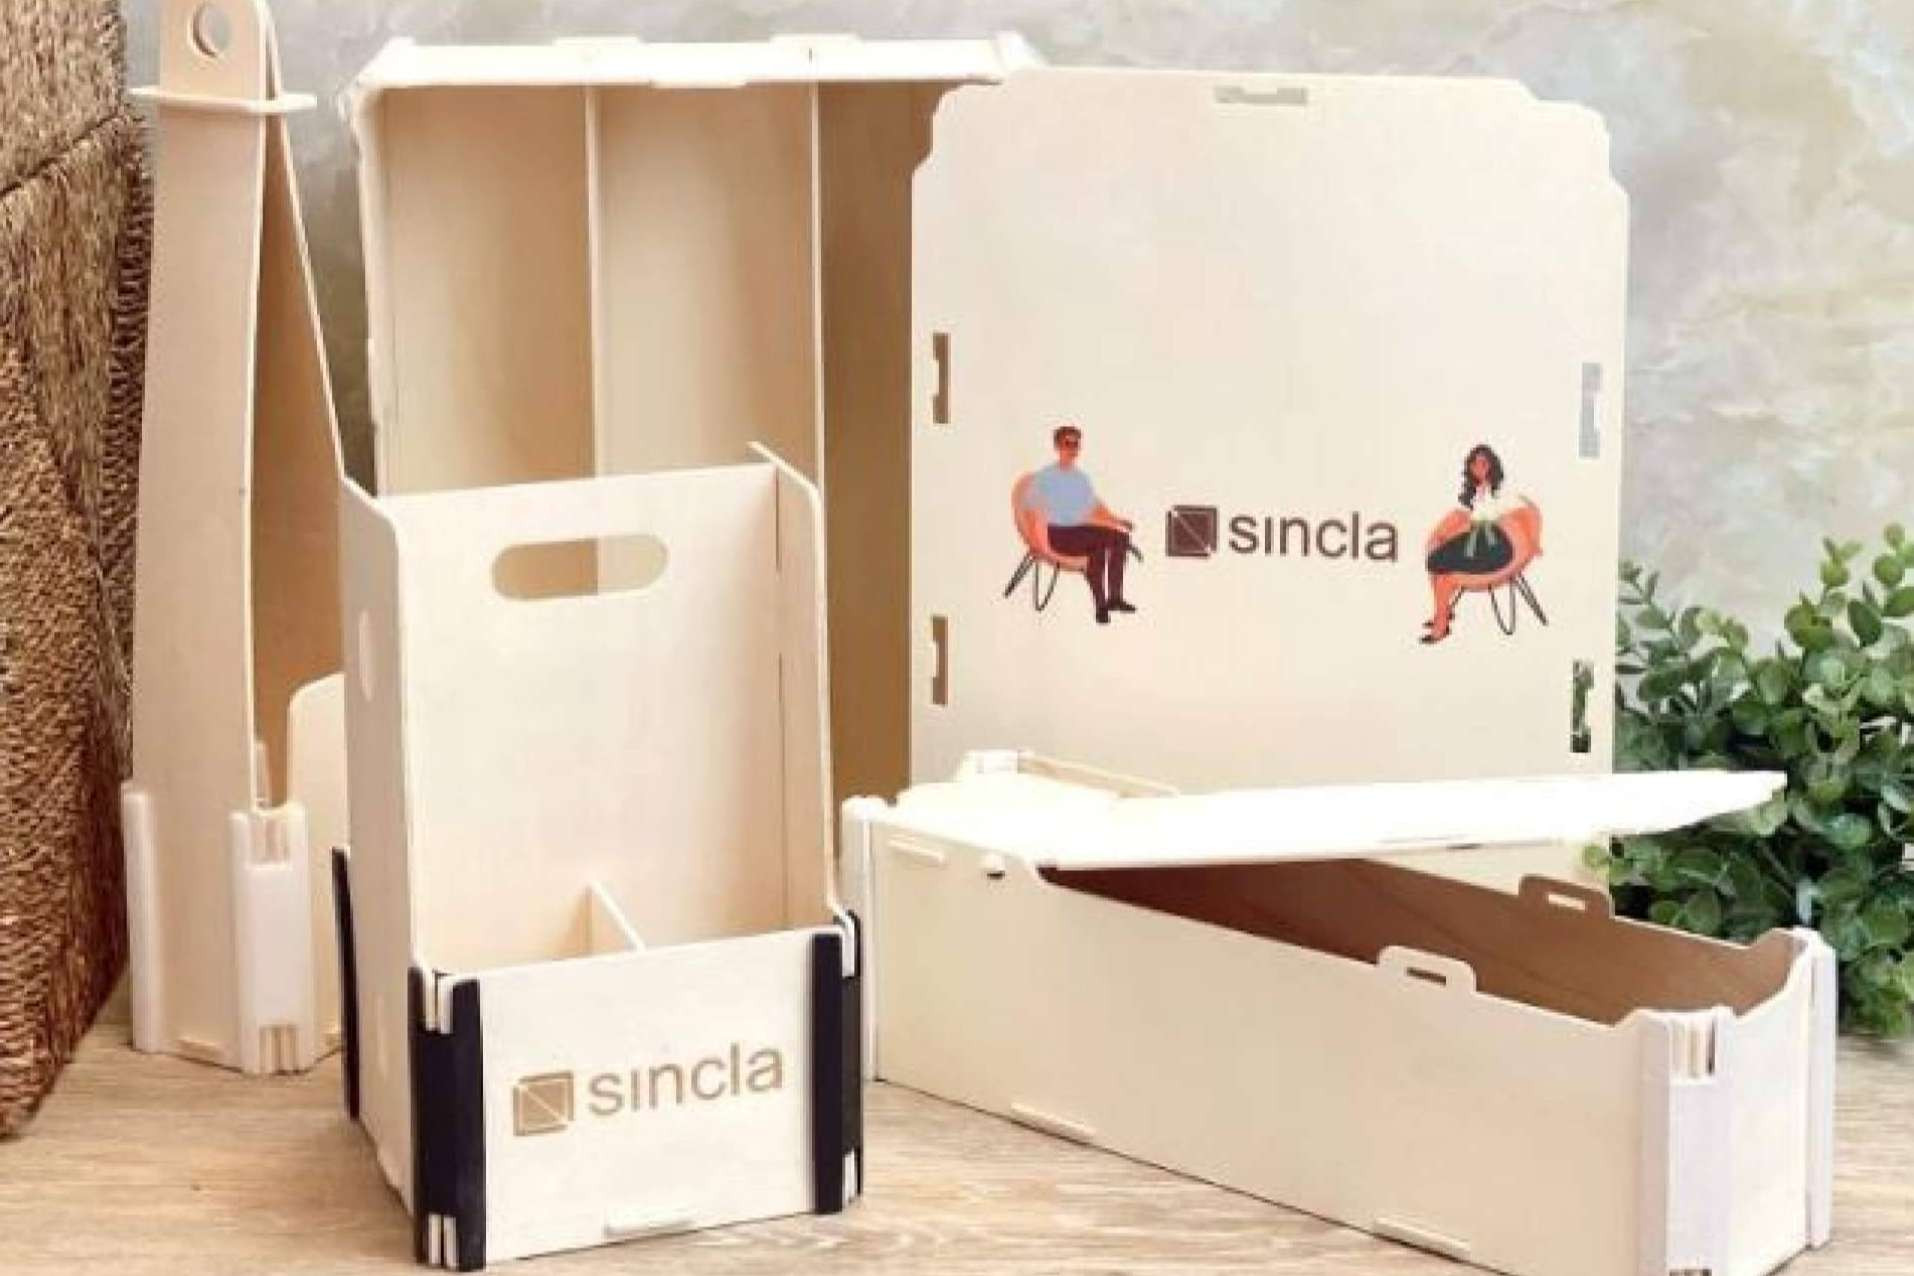  Packaging sostenible, una tendencia en crecimiento, por Sincla 